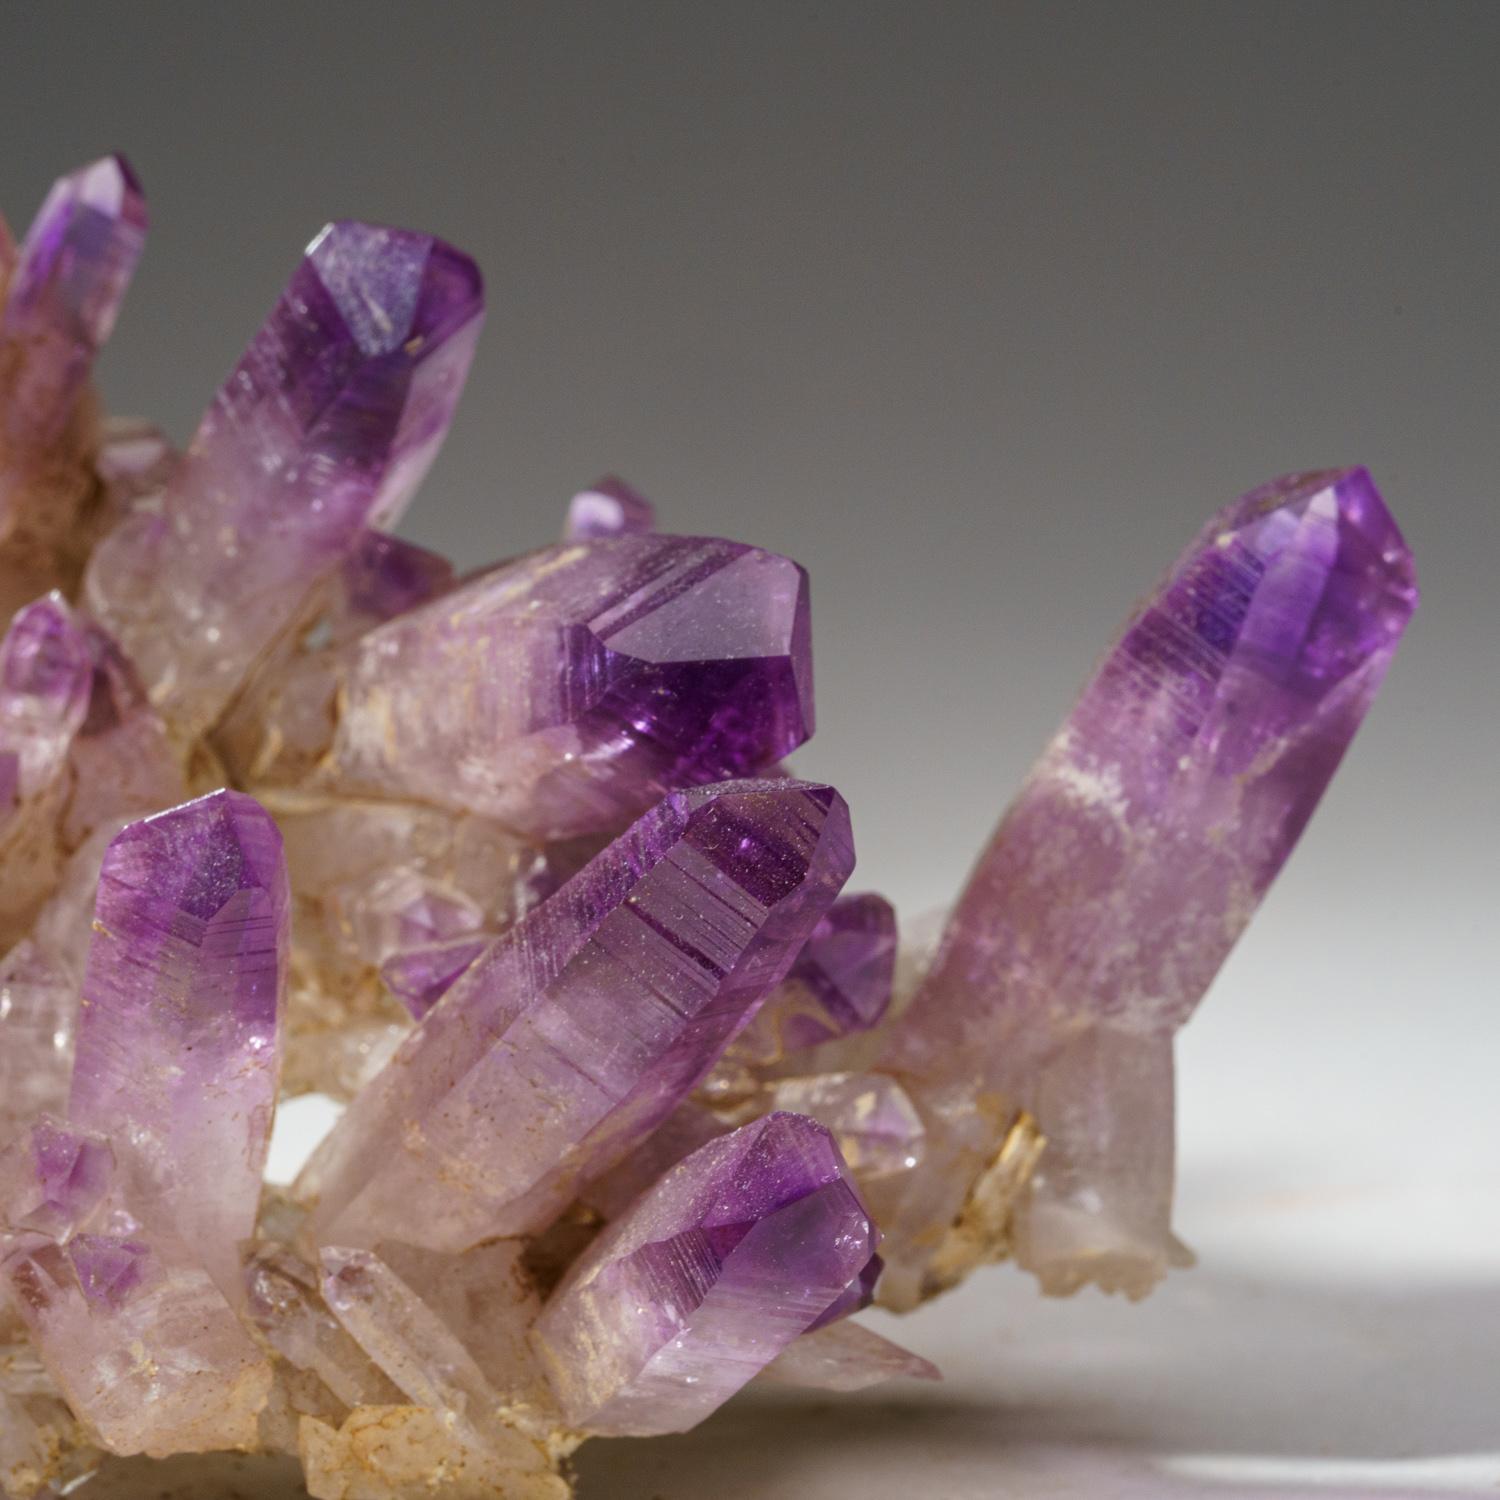 Aus Piedra Parada, Las Vigas de Ramirez, Veracruz, Mexiko.
Transparenter violetter Amethystquarzkristall mit glänzenden Kristallflächen und satter violetter Farbe mit gut definierter Phantomzonierung. Der Kristall ist vollständig mit glänzenden,